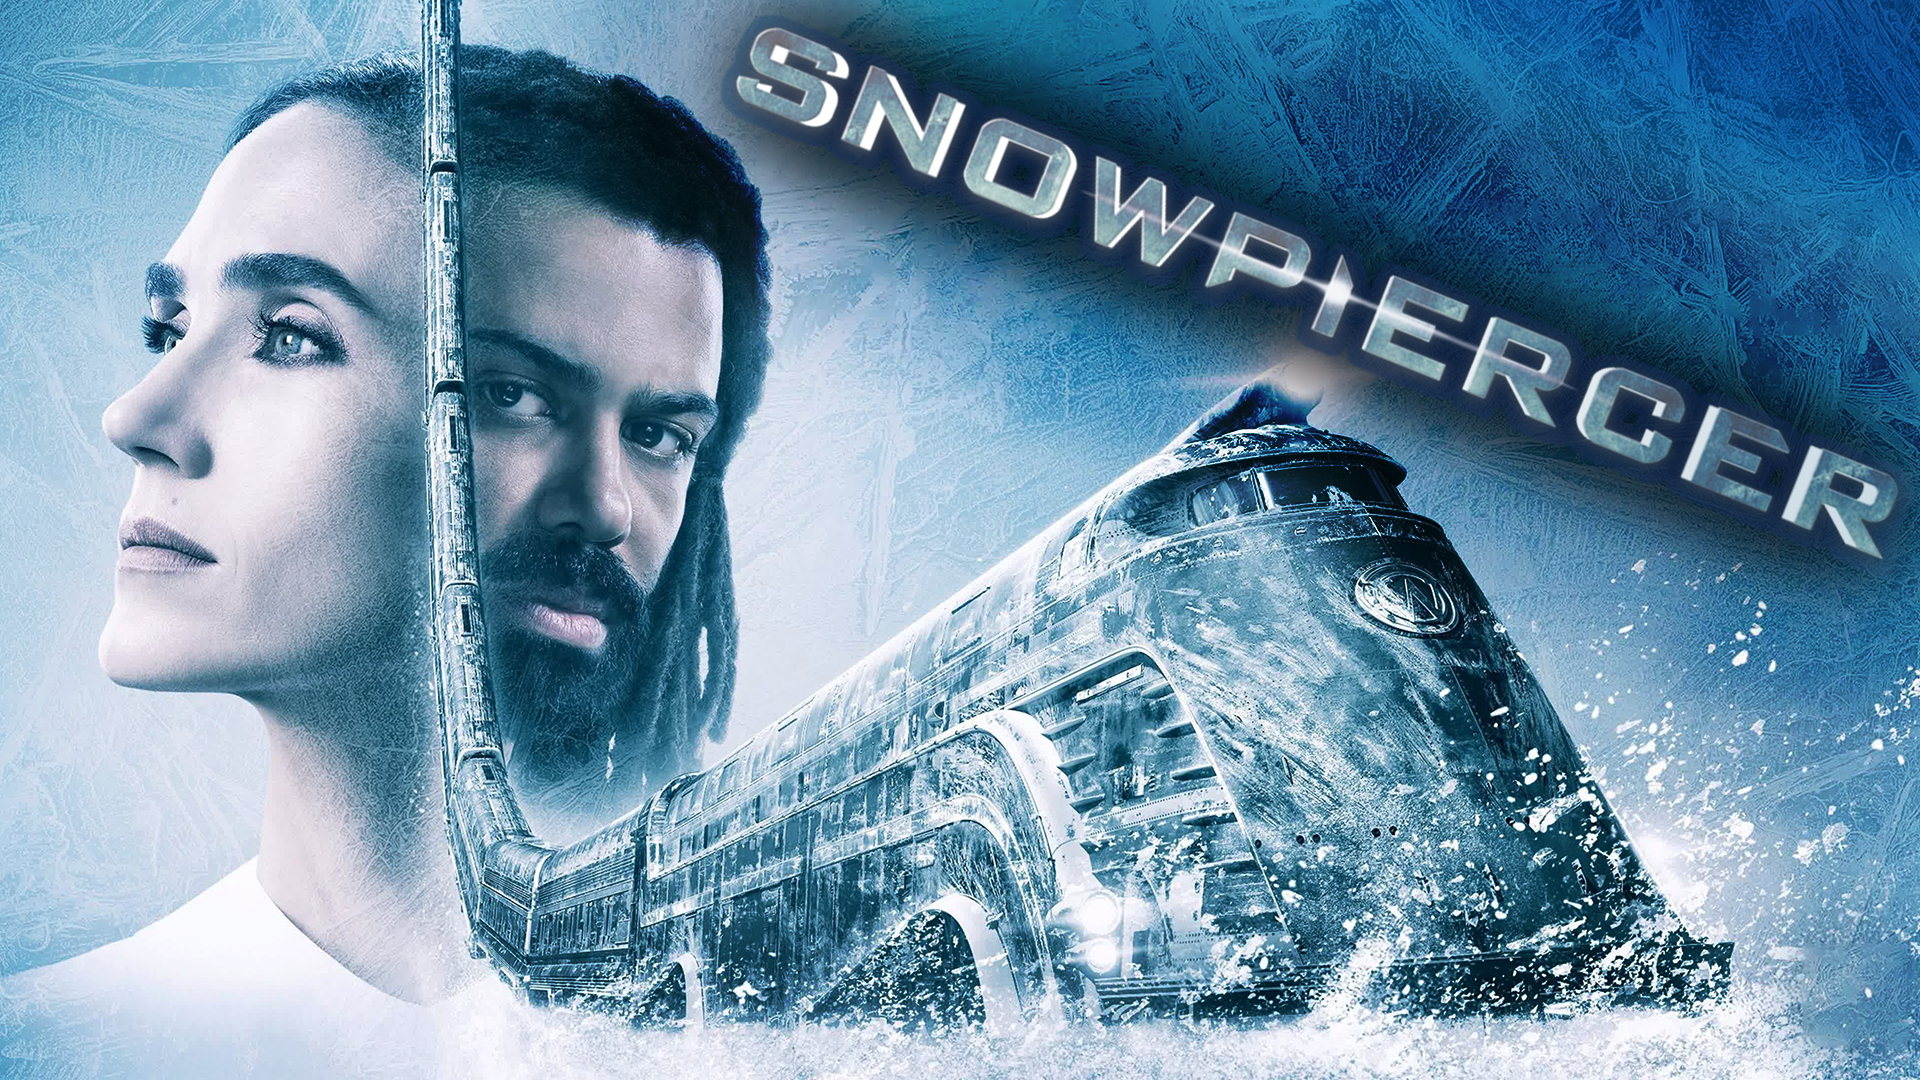 Сквозь снег – 2 сезон 9 серия / Snowpiercer